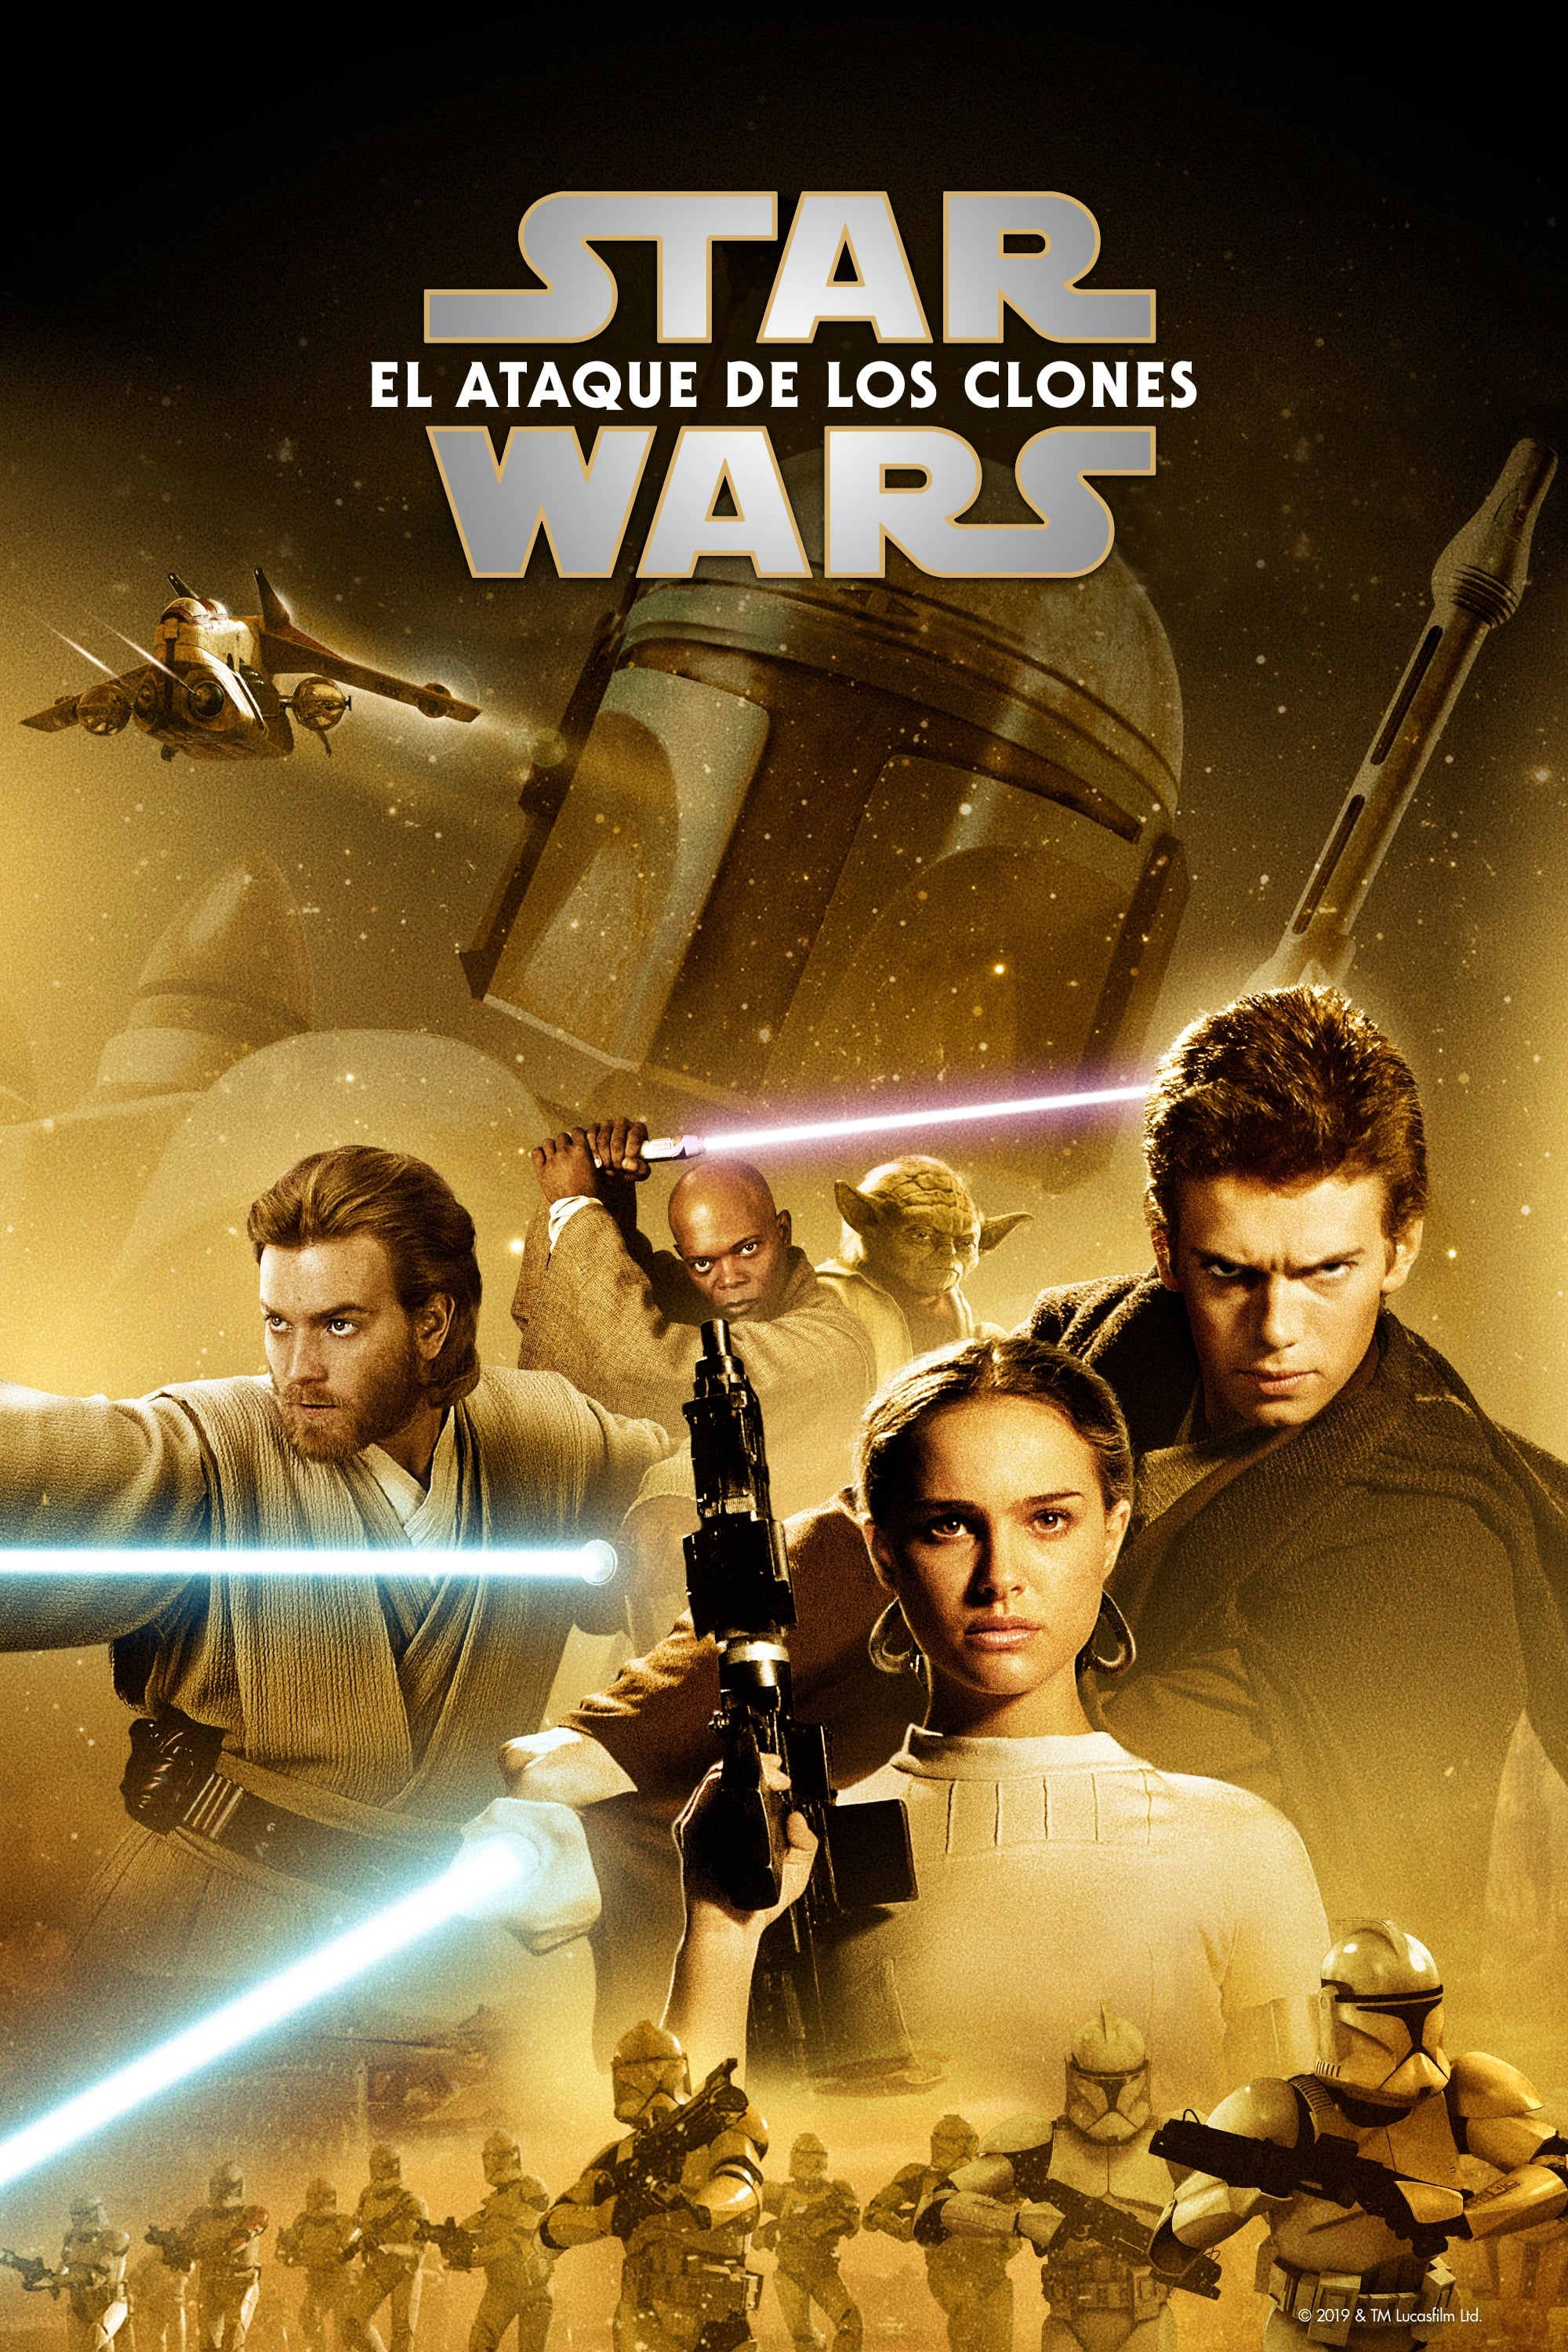 Star Wars: Episodio II: El ataque de los clones - 2002